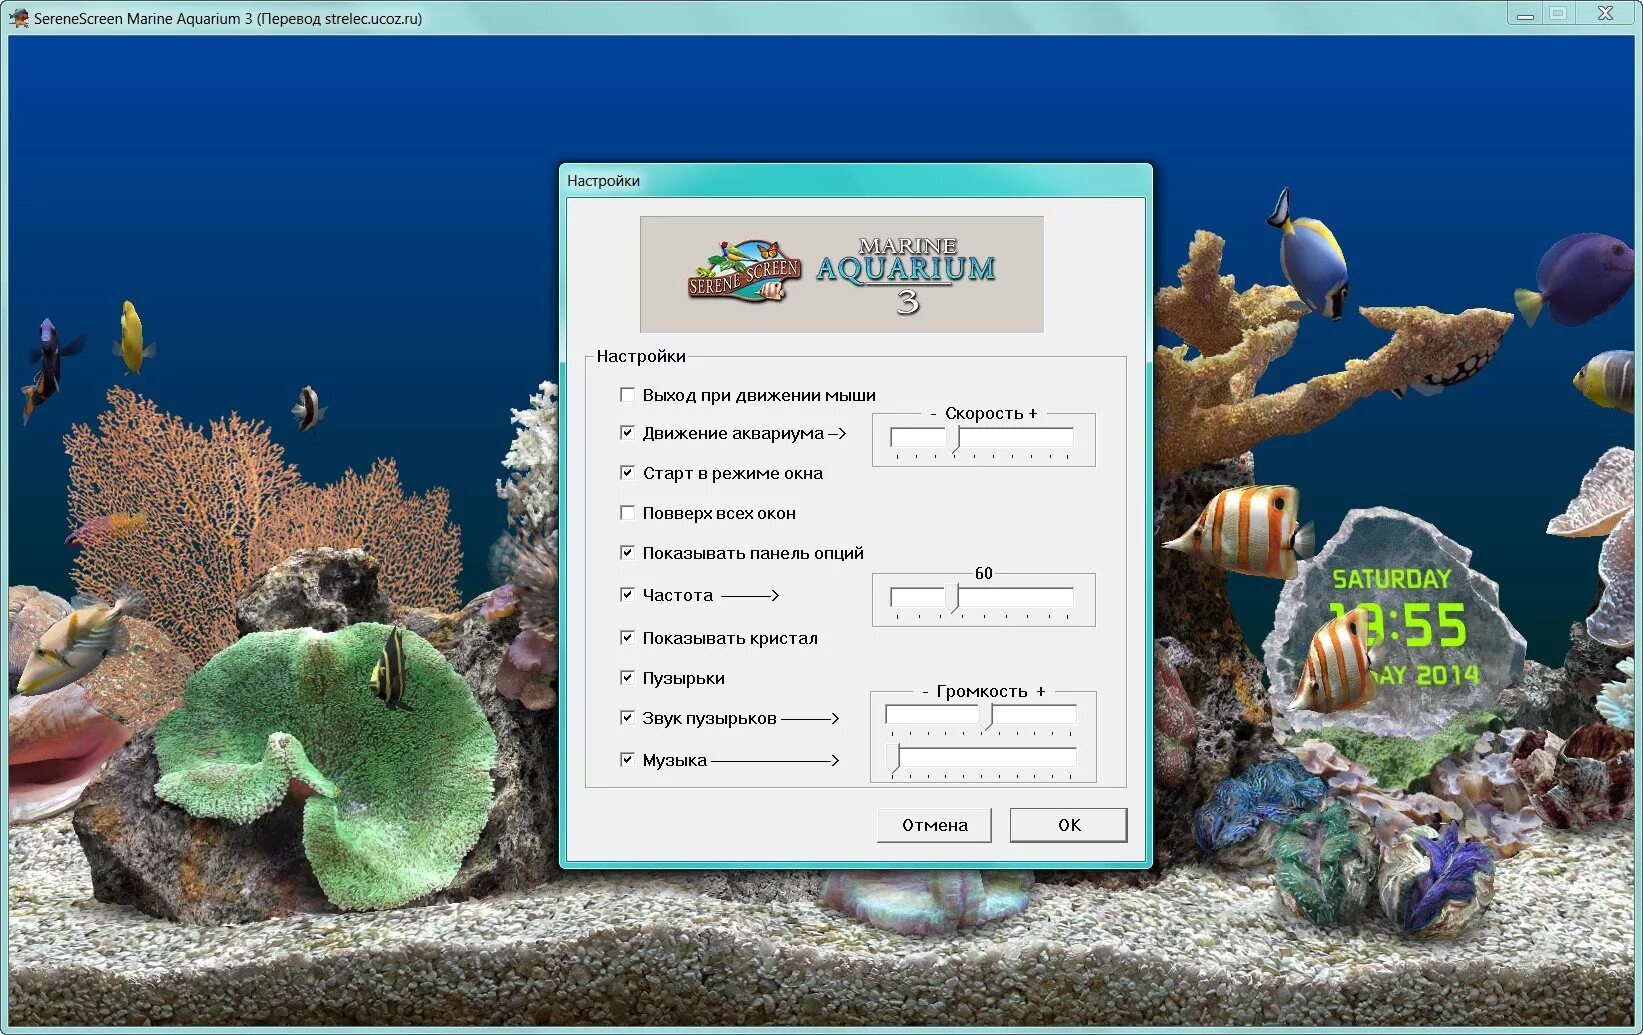 Aquarium перевод. Заставка Marine Aquarium 3. Морской аквариум. Программа для аквариума. Marine Aquarium Screensaver.